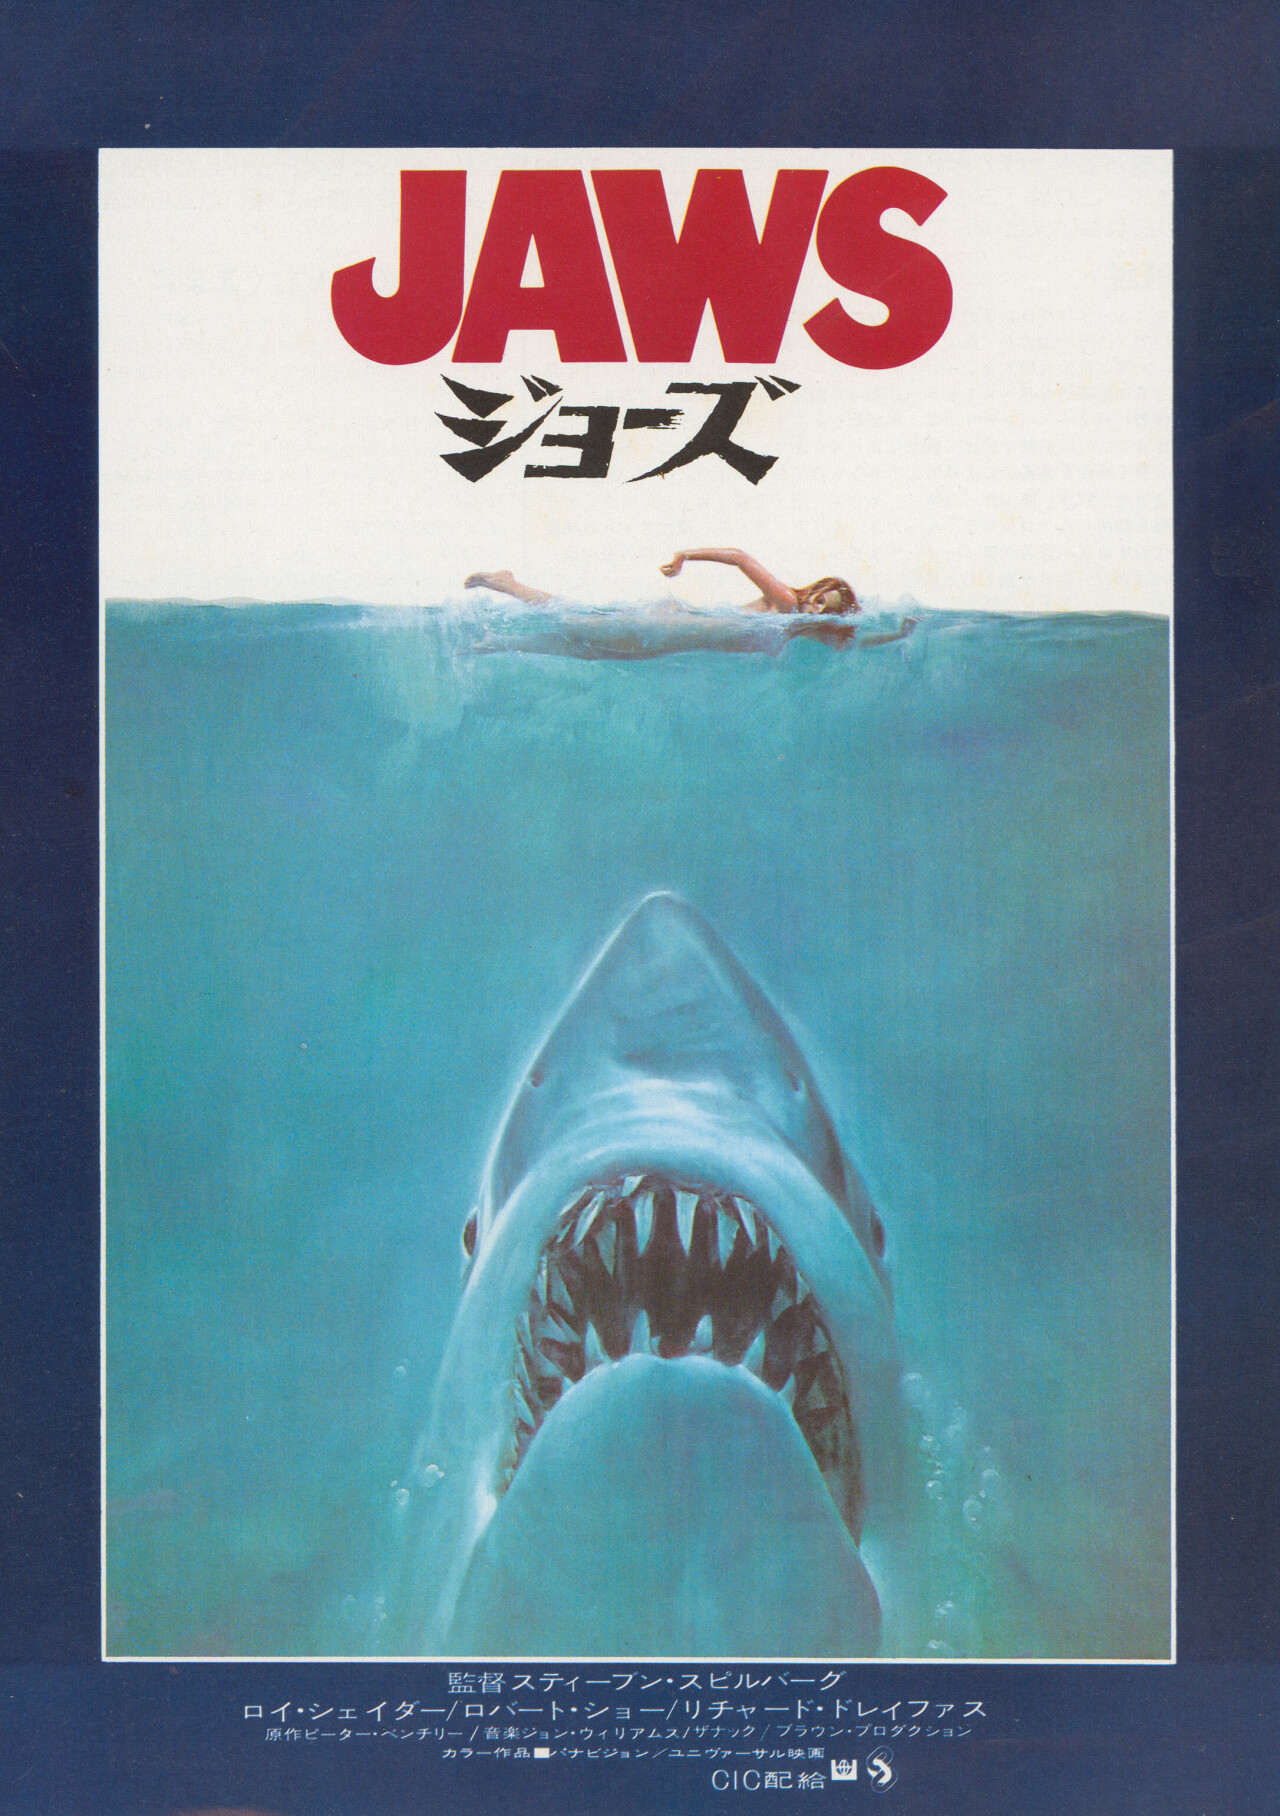 Челюсти (Jaws, 1975), режиссёр Стивен Спилберг, японский постер к фильму (монстры, 1975 год)